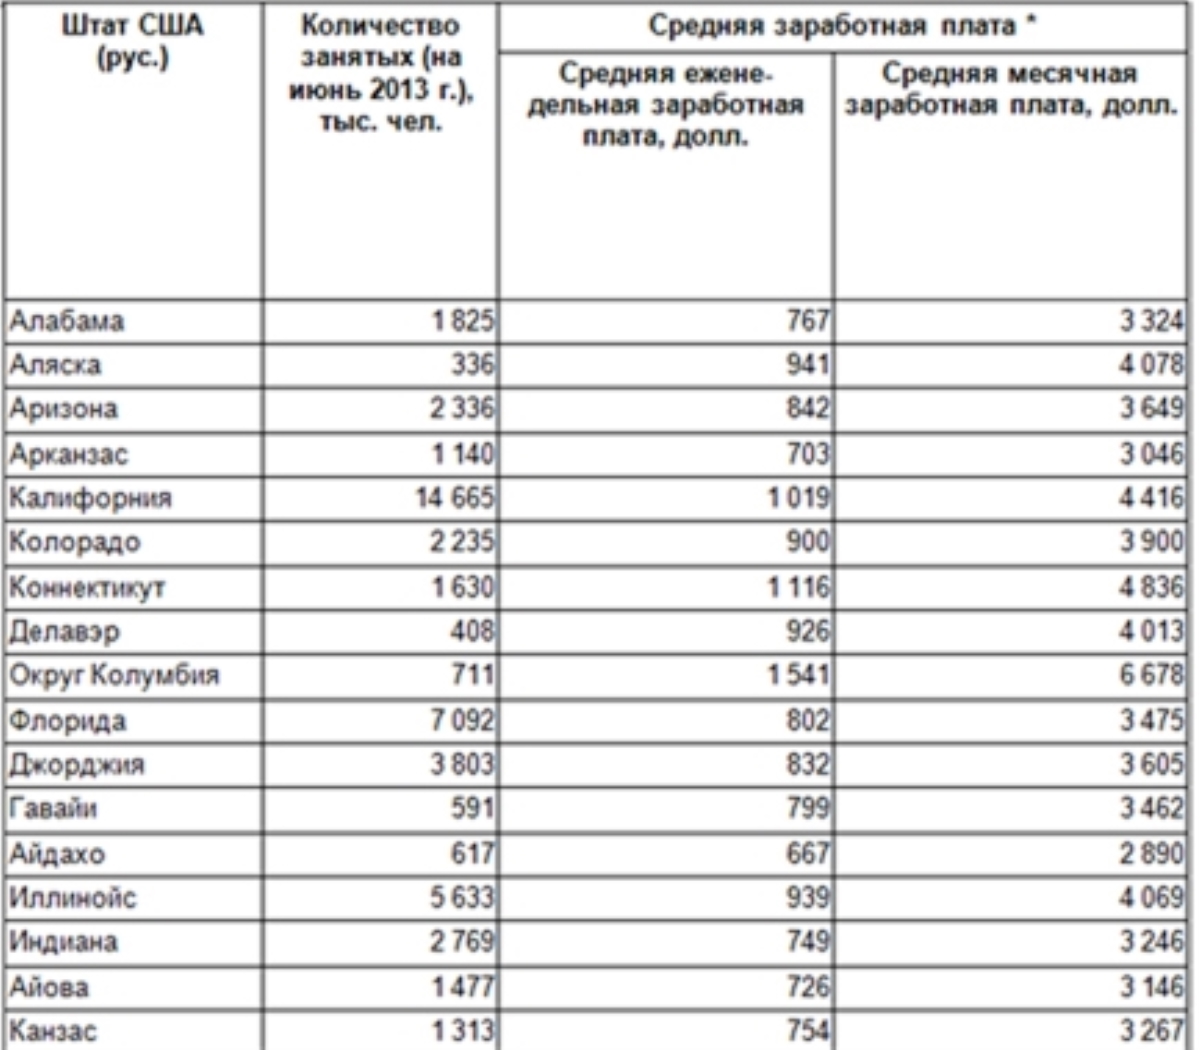 Сколько получают украинские депутаты